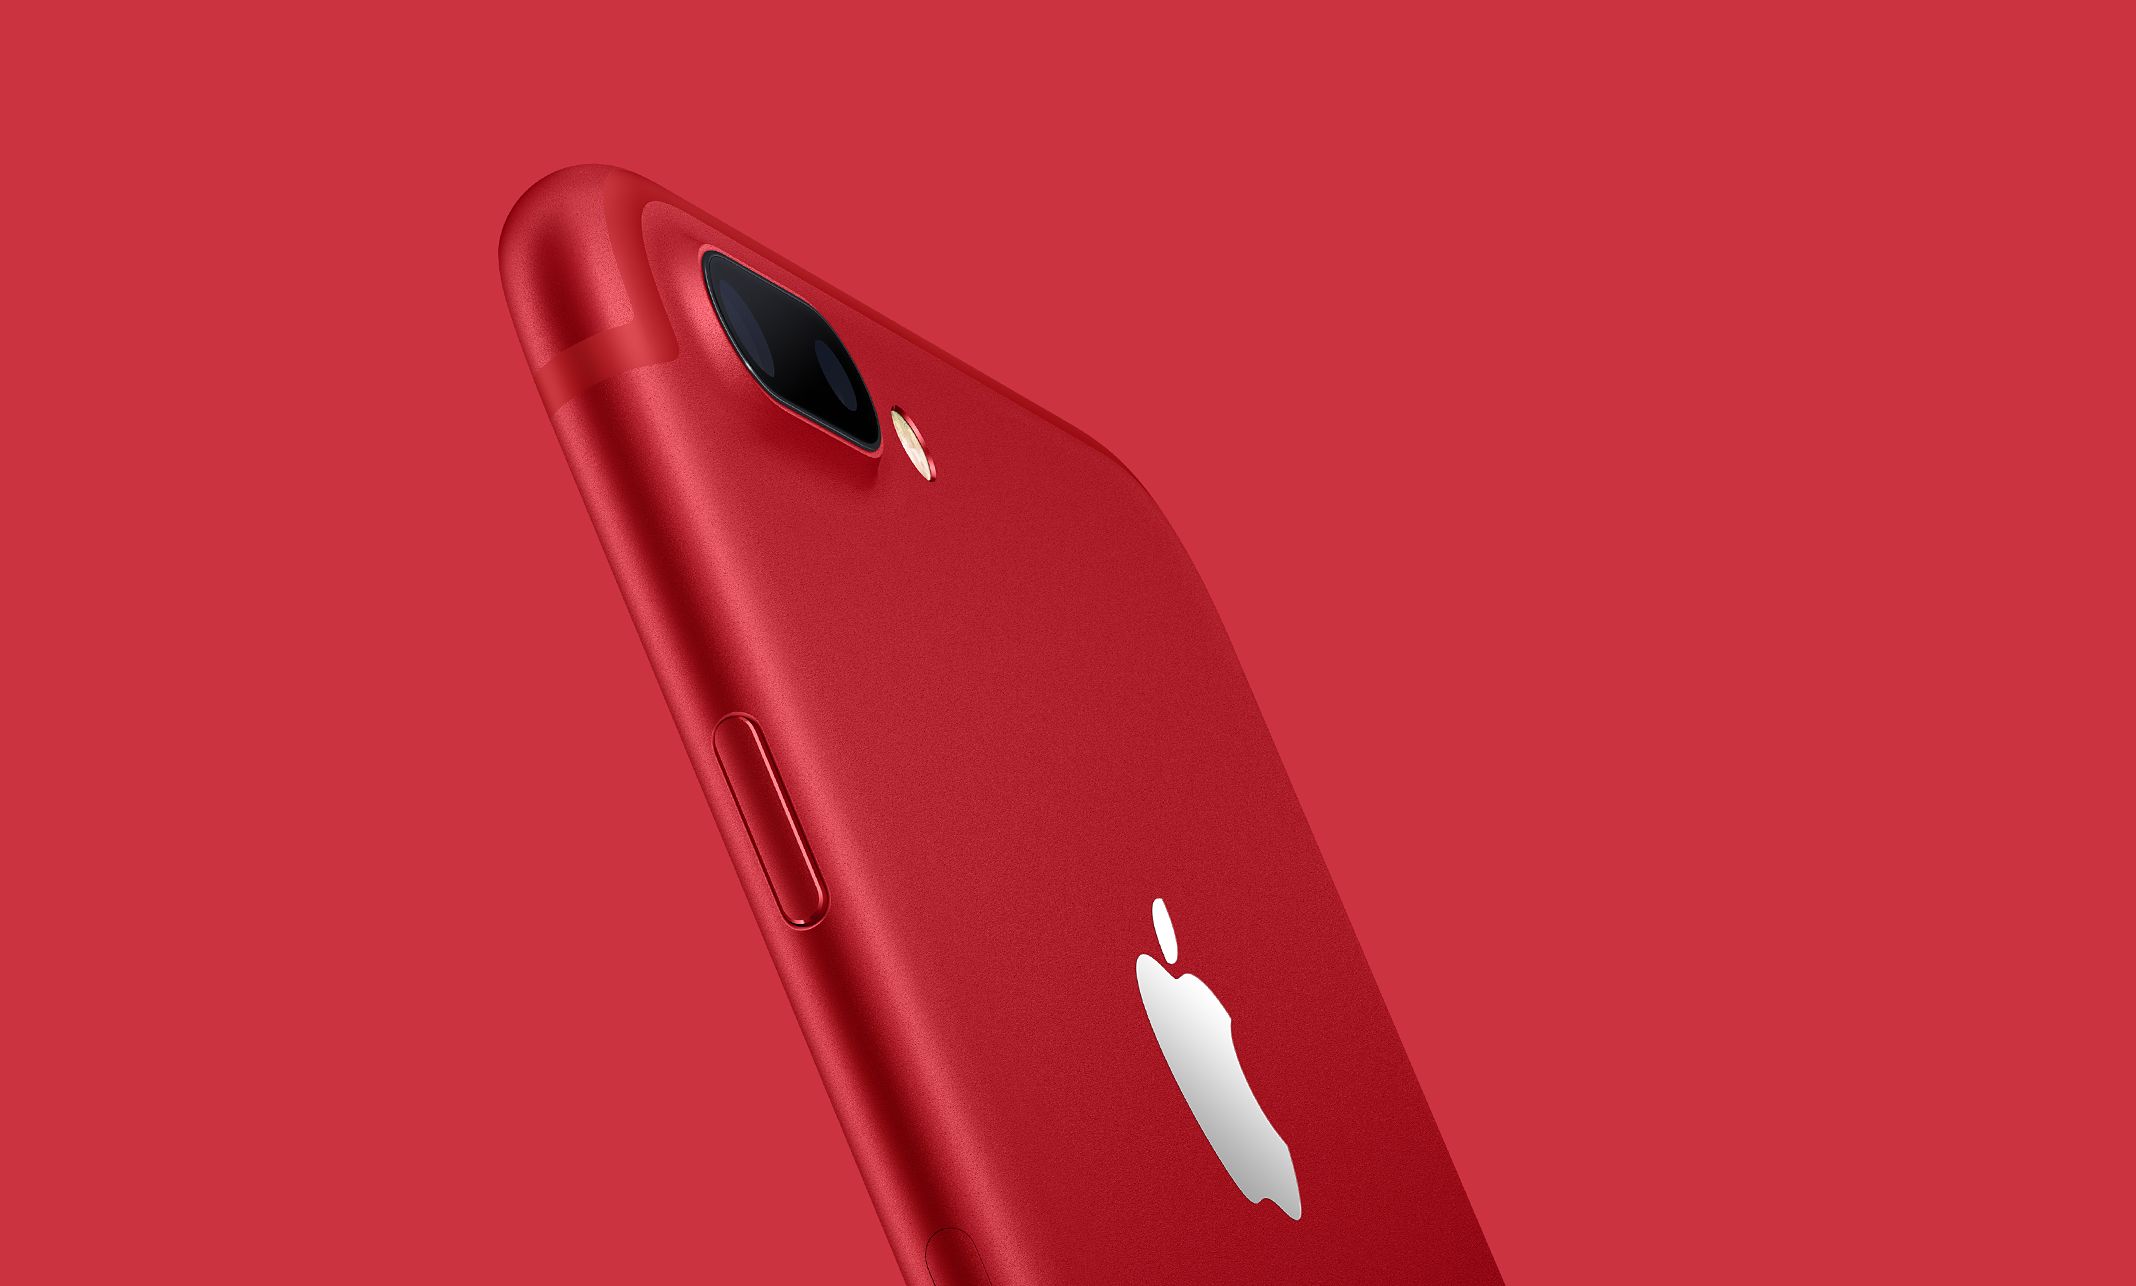 3キャリア、新色レッド「iPhone 7 (PRODUCT) RED Special Edition」を発売